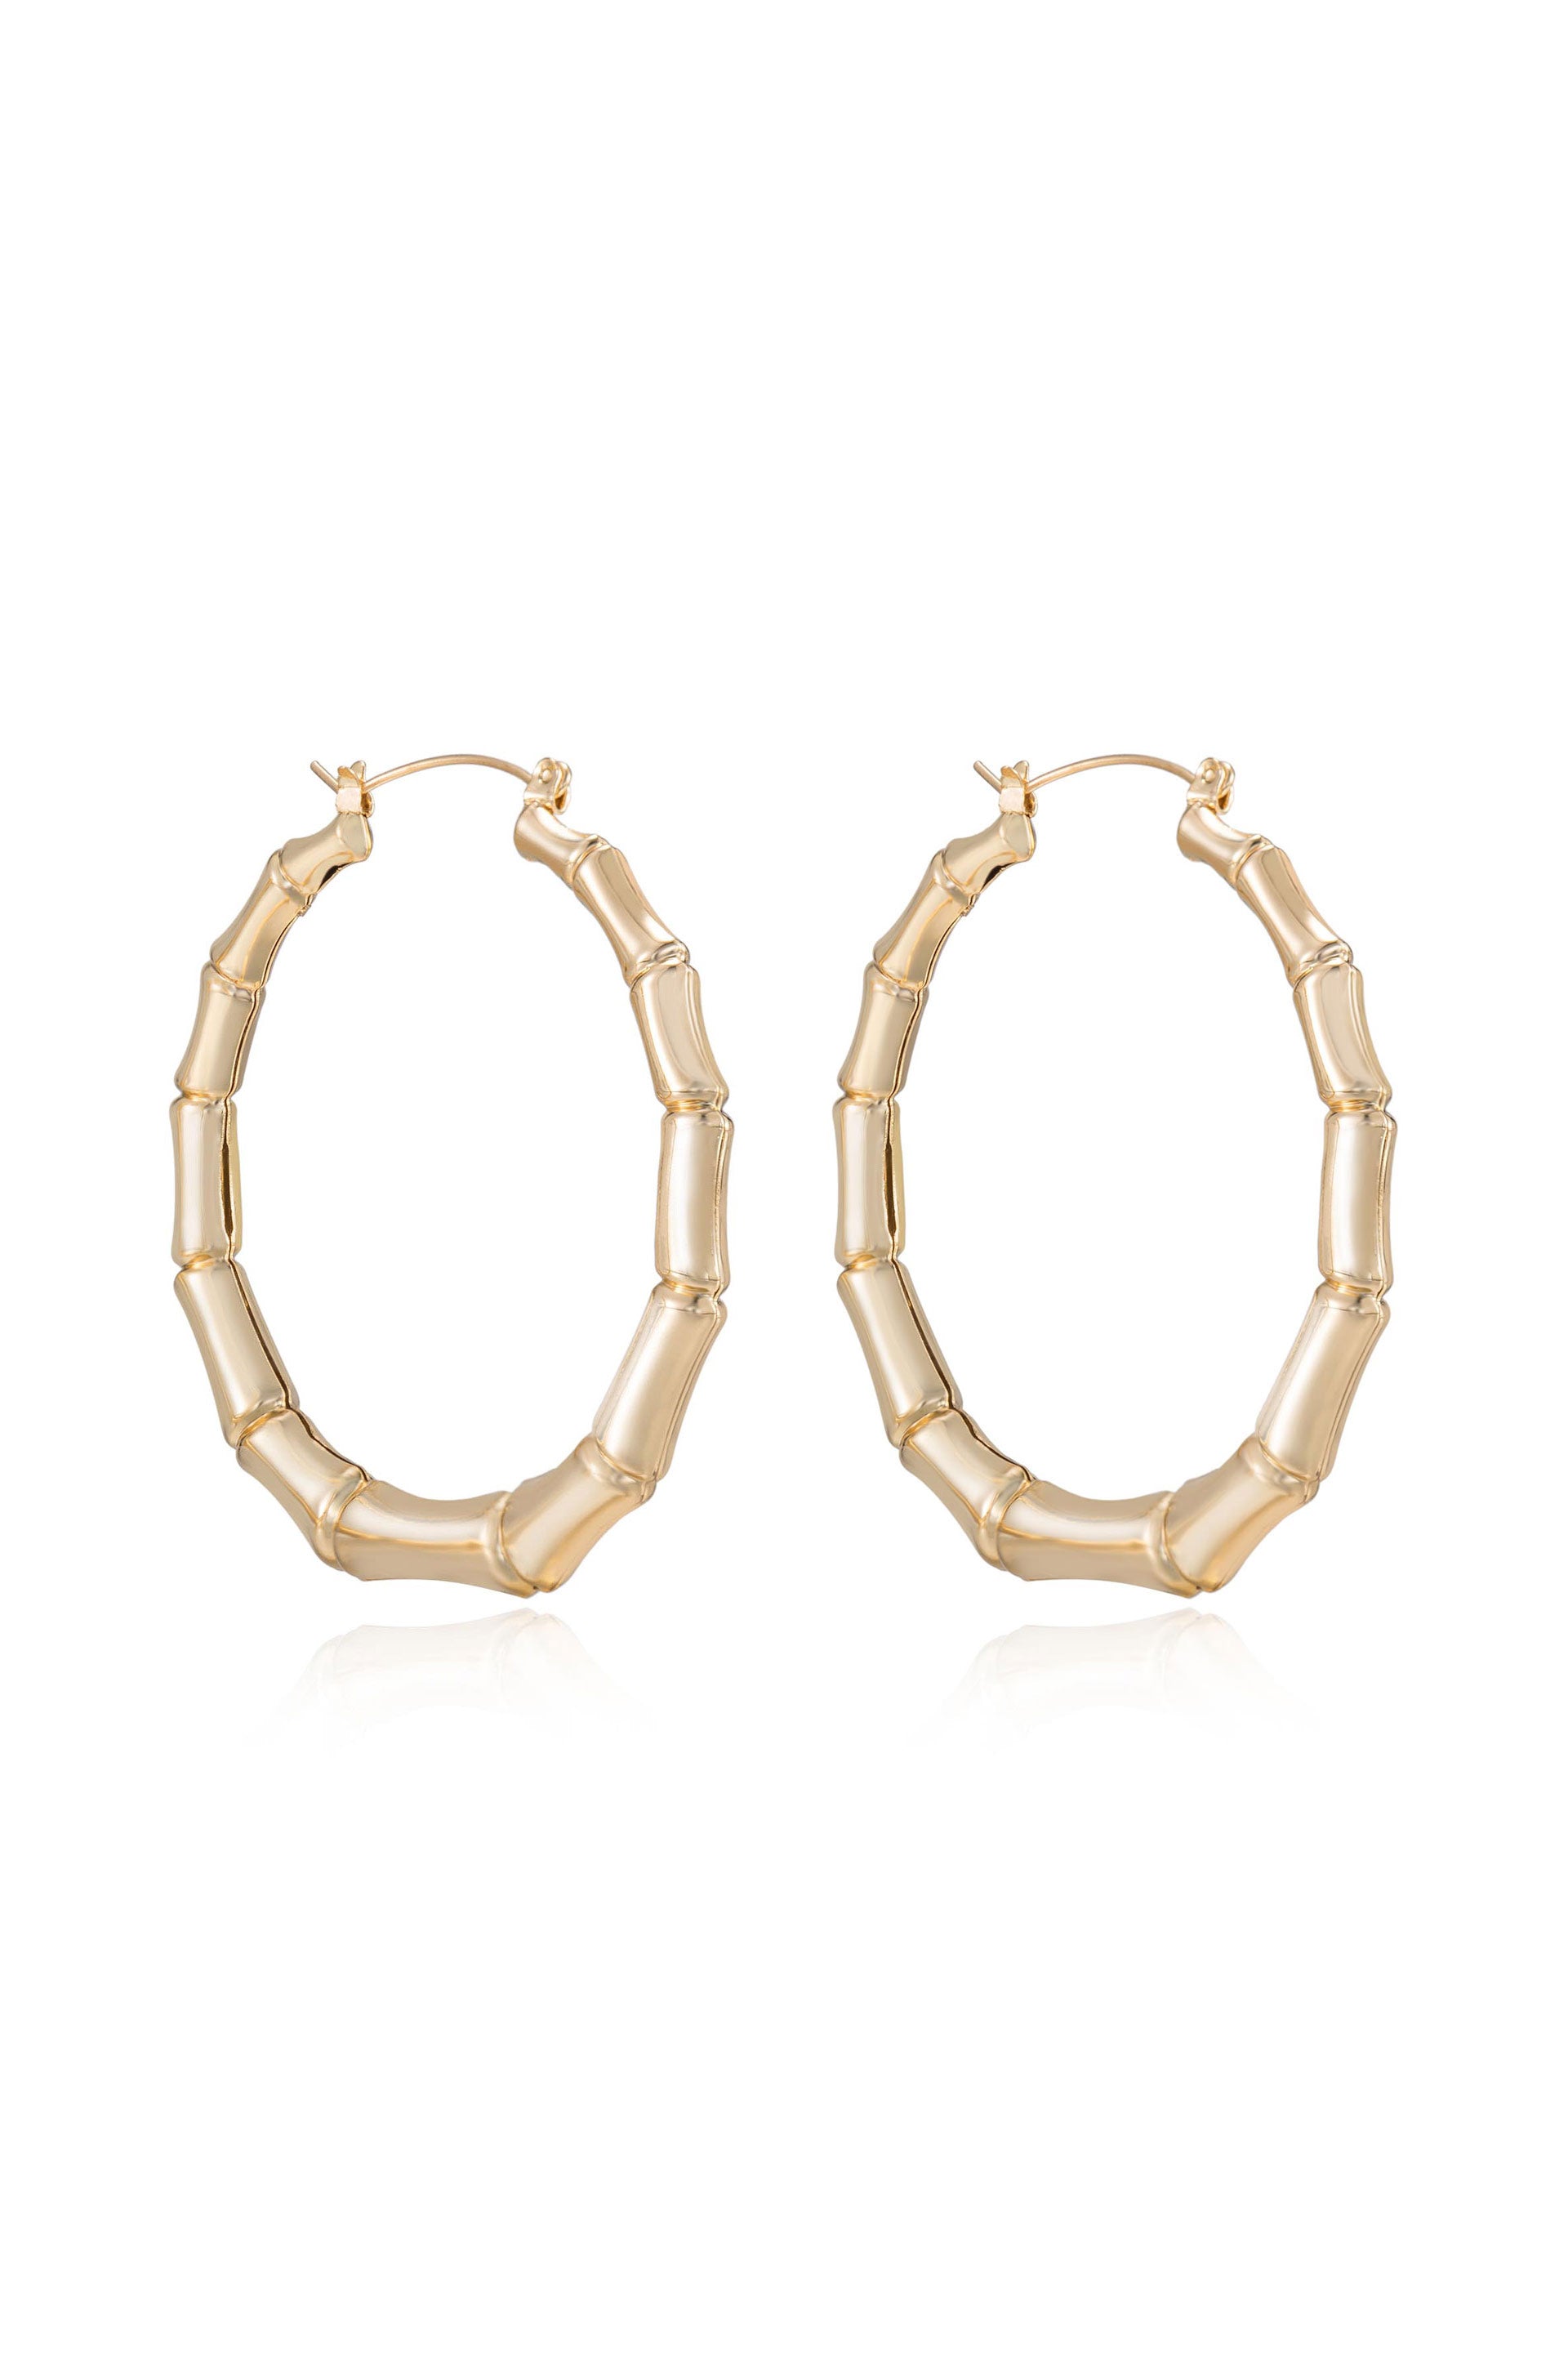 Bamboo Hoop Earrings - Premium Earrings from Ettika - Just $45! Shop now at Tooksie